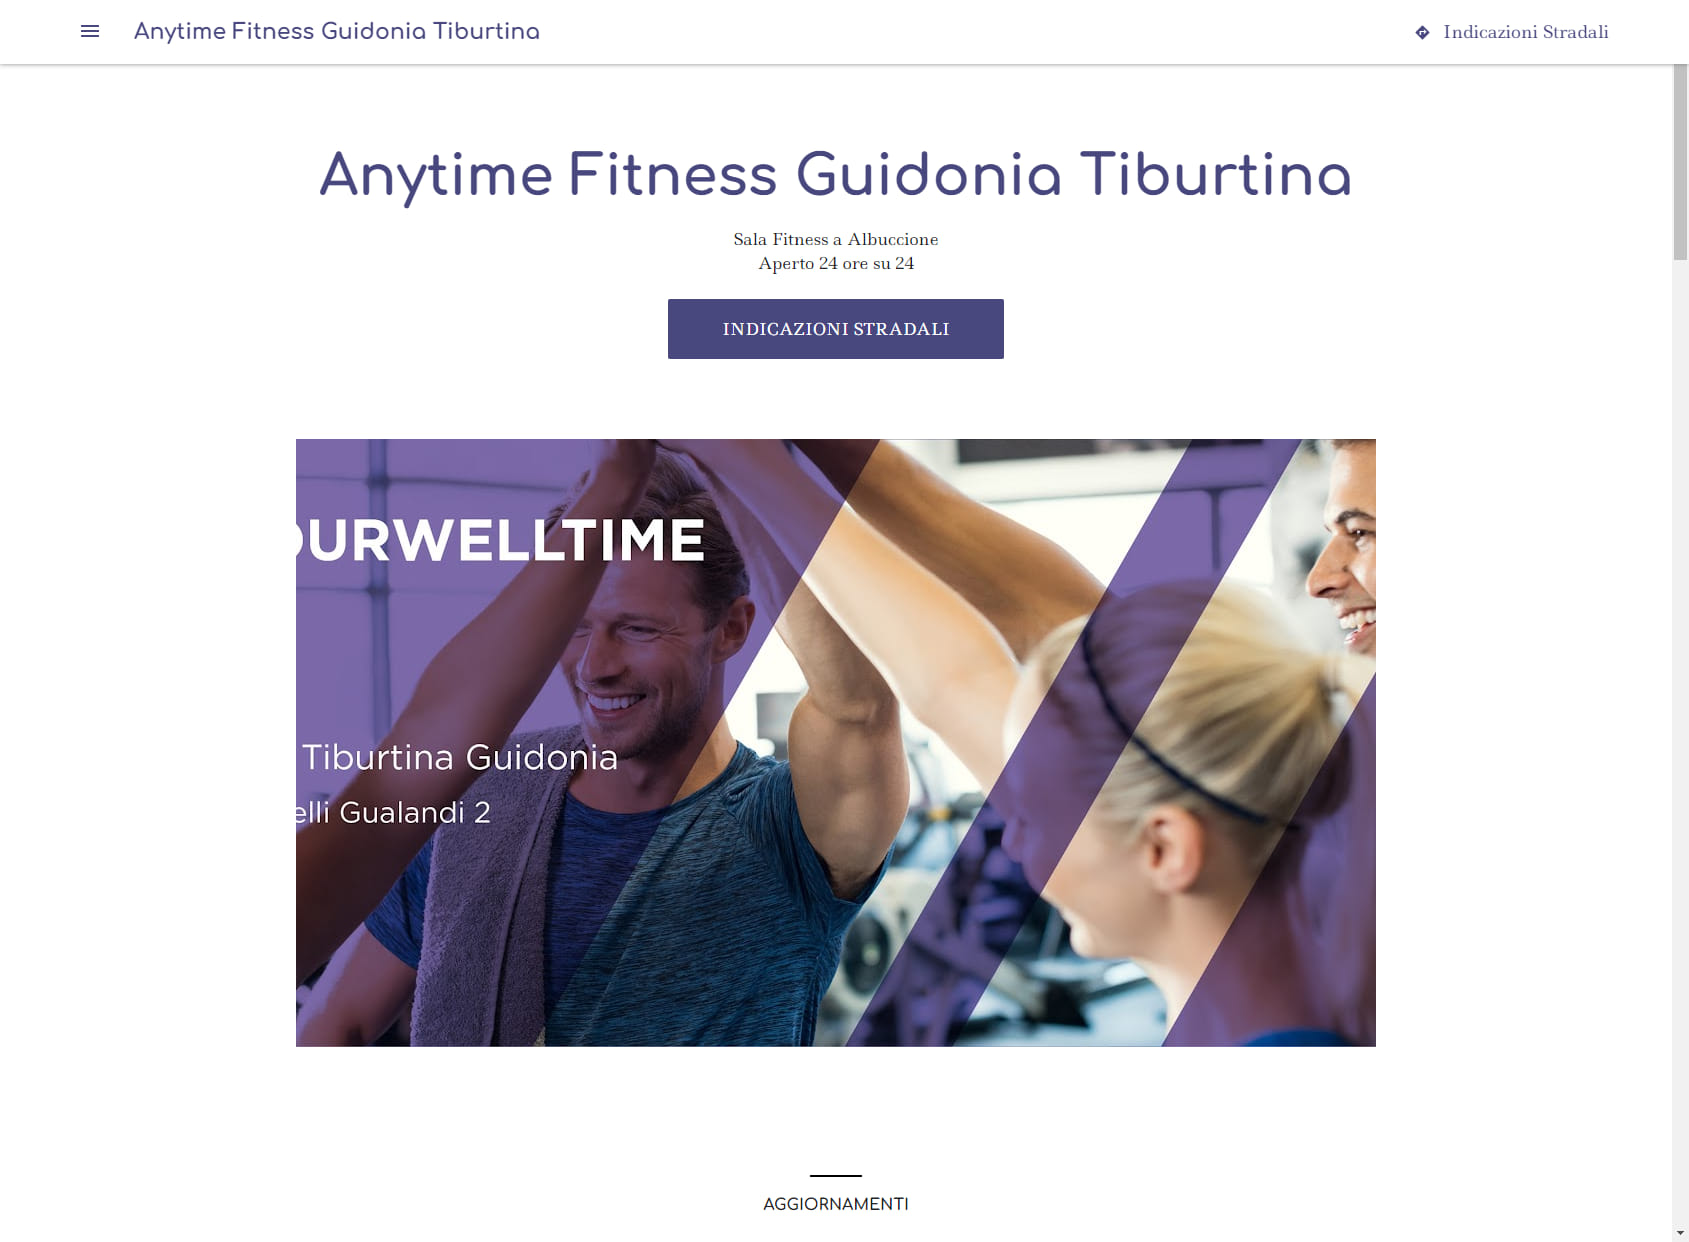 Anytime Fitness Guidonia Tiburtina